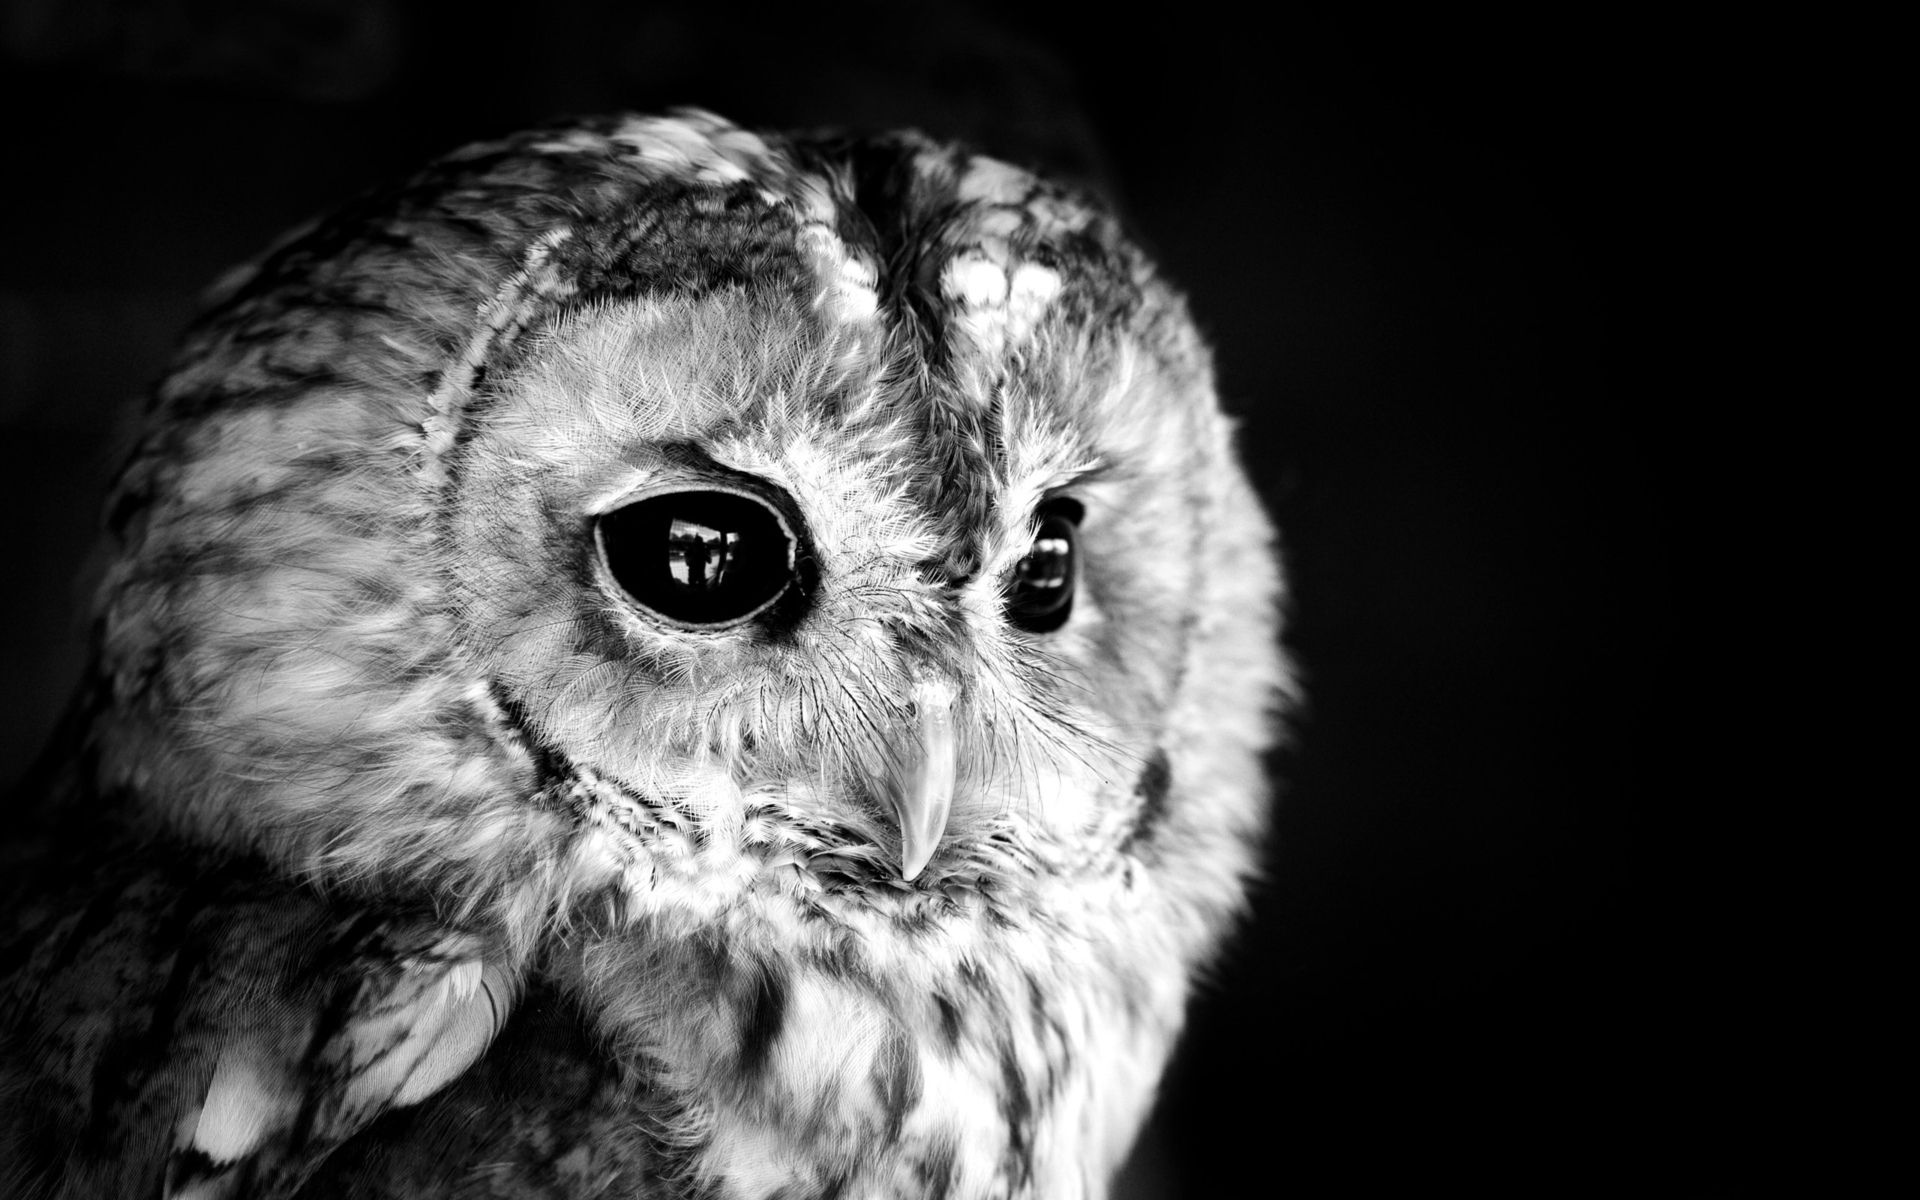 Black owl photo white monochrome face eyes feathers wallpaperx1200